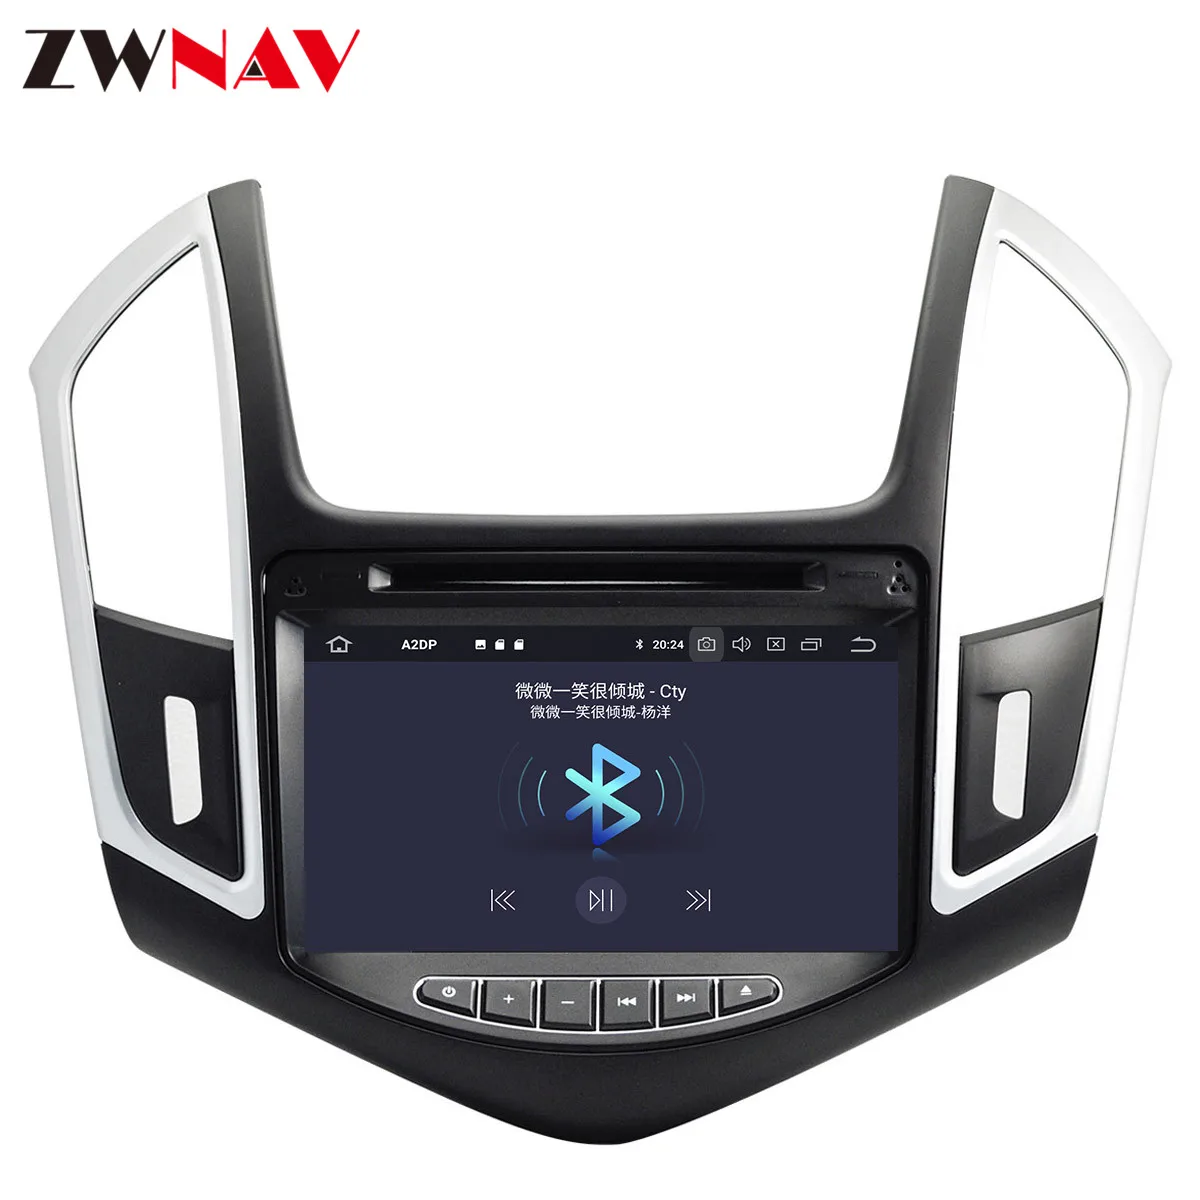 DSP Android 9,1 Автомобиль Радио Мультимедийный DVD плеер для Chevrolet Cruze 2012 2013 gps для навигации и аудиосистемы стерео, головное устройство